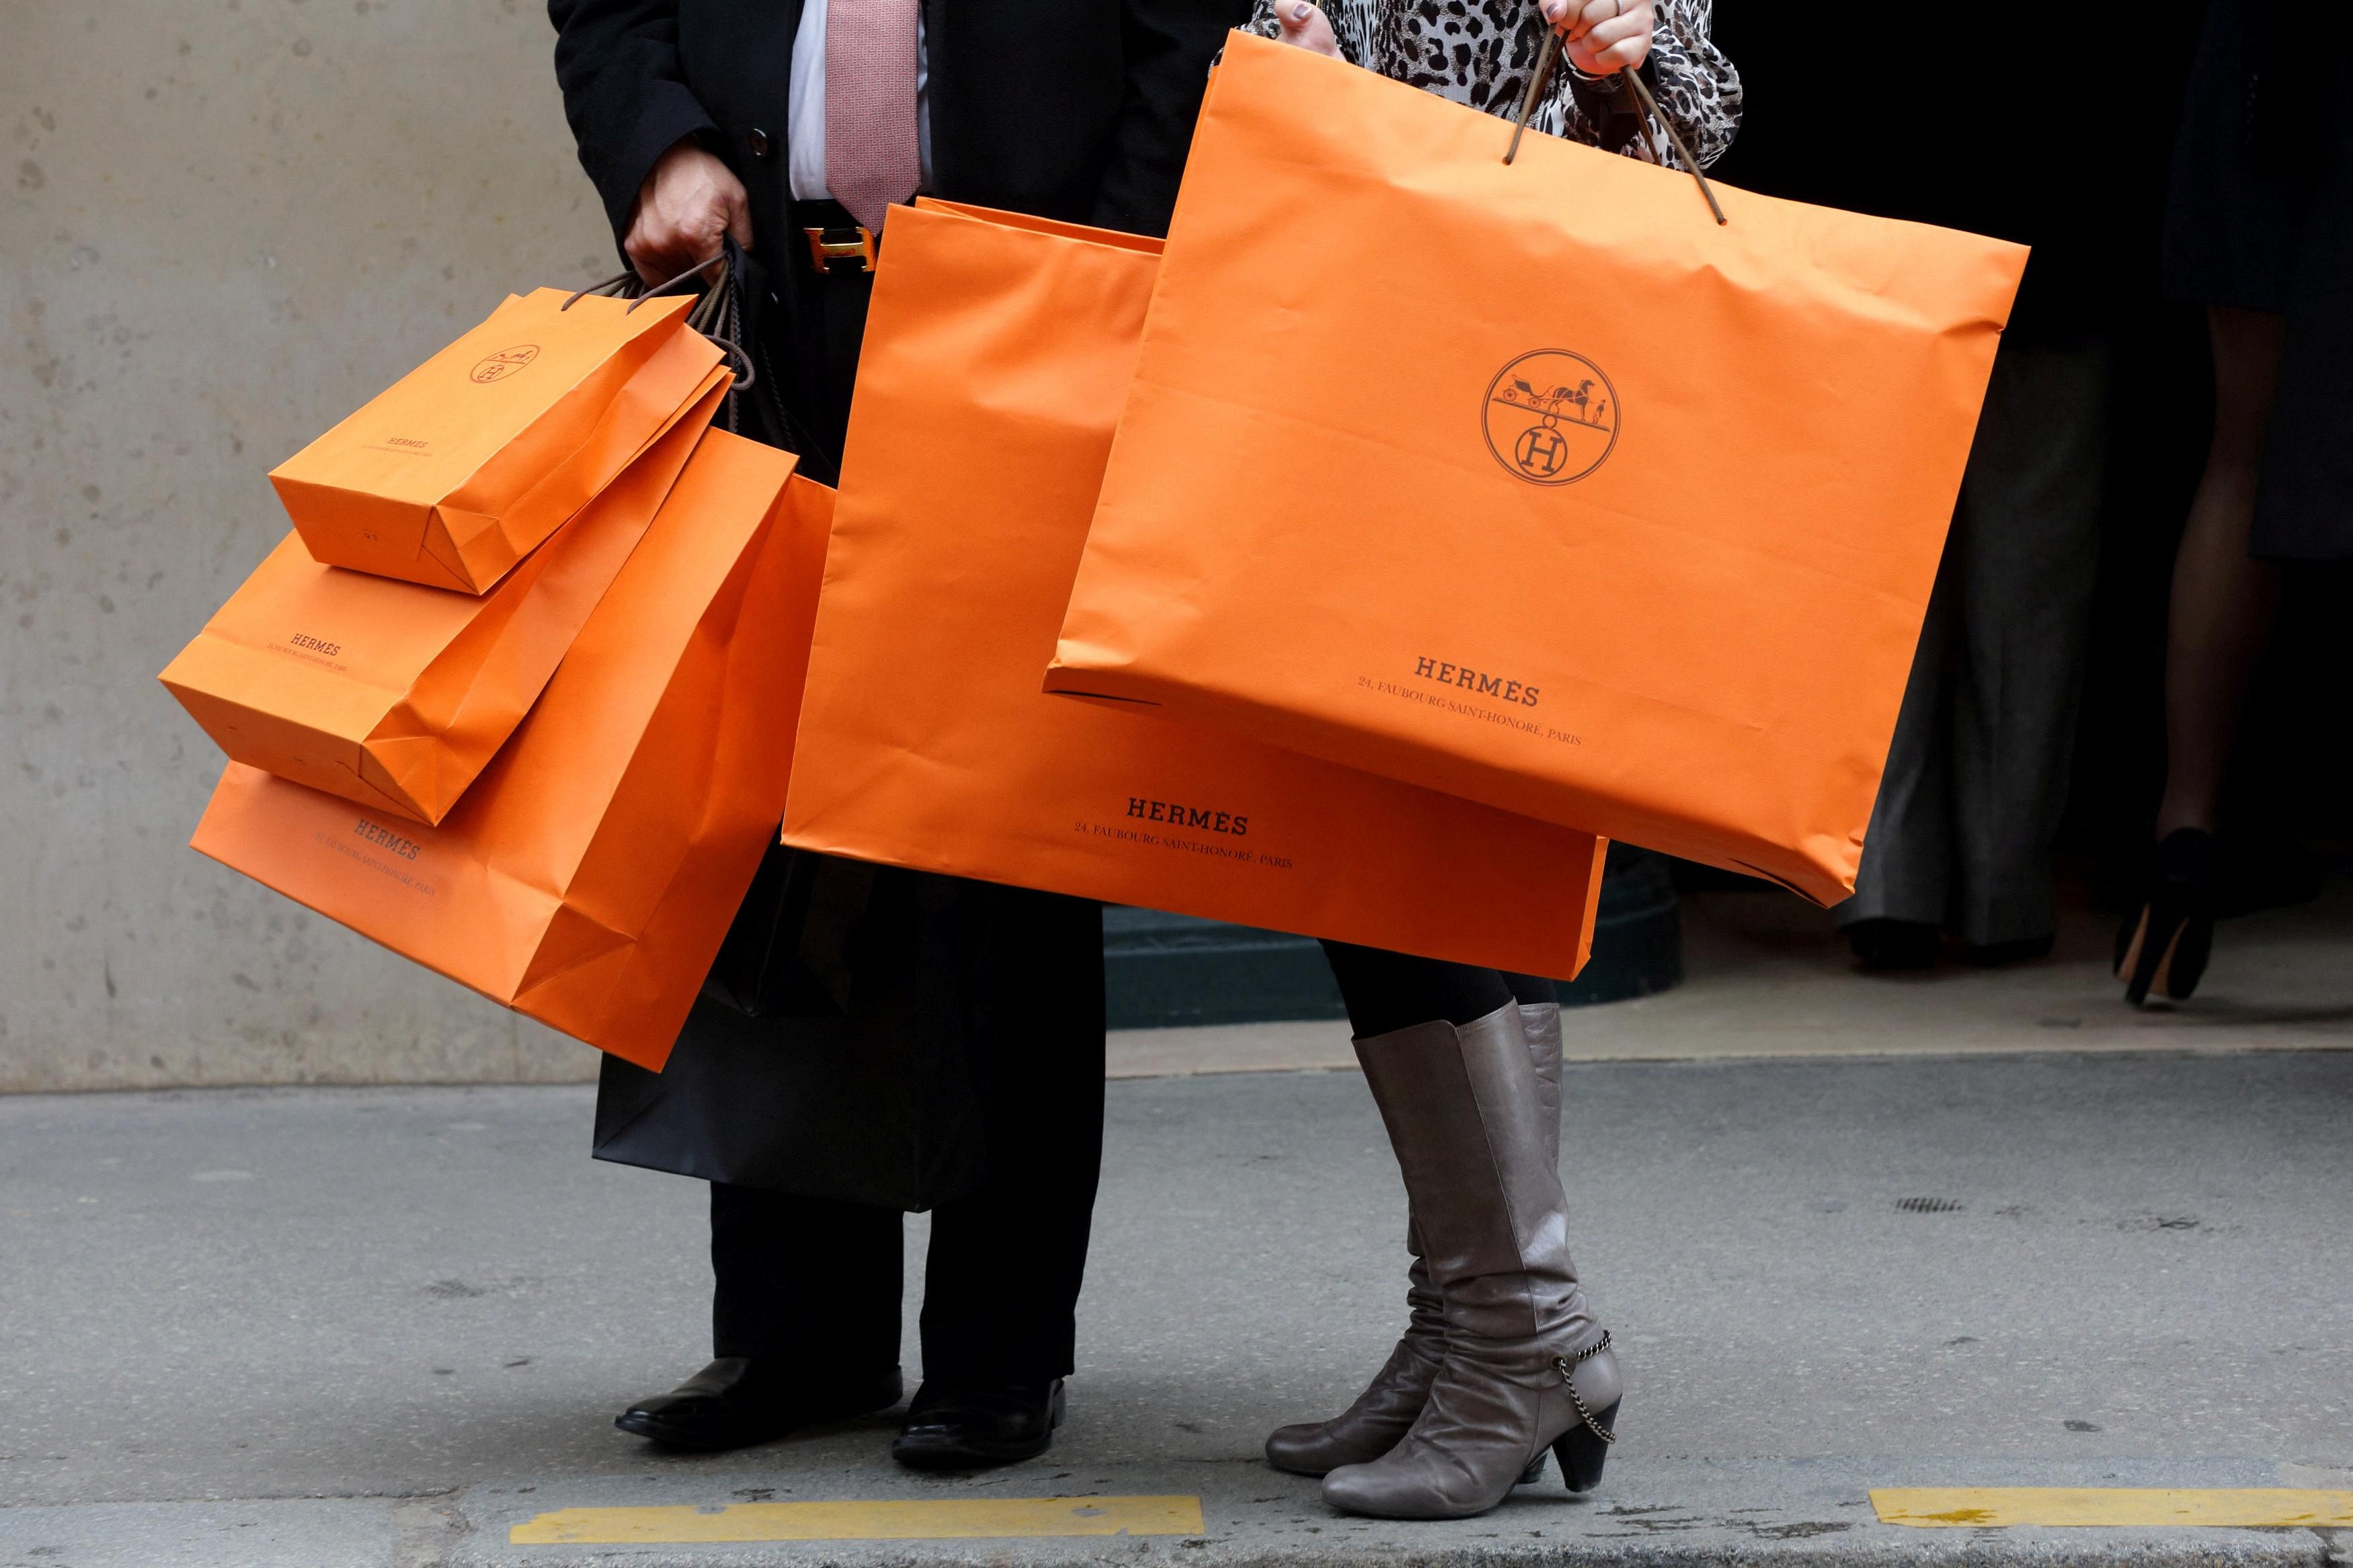 Hermes' surging sales defy luxury sector gloom